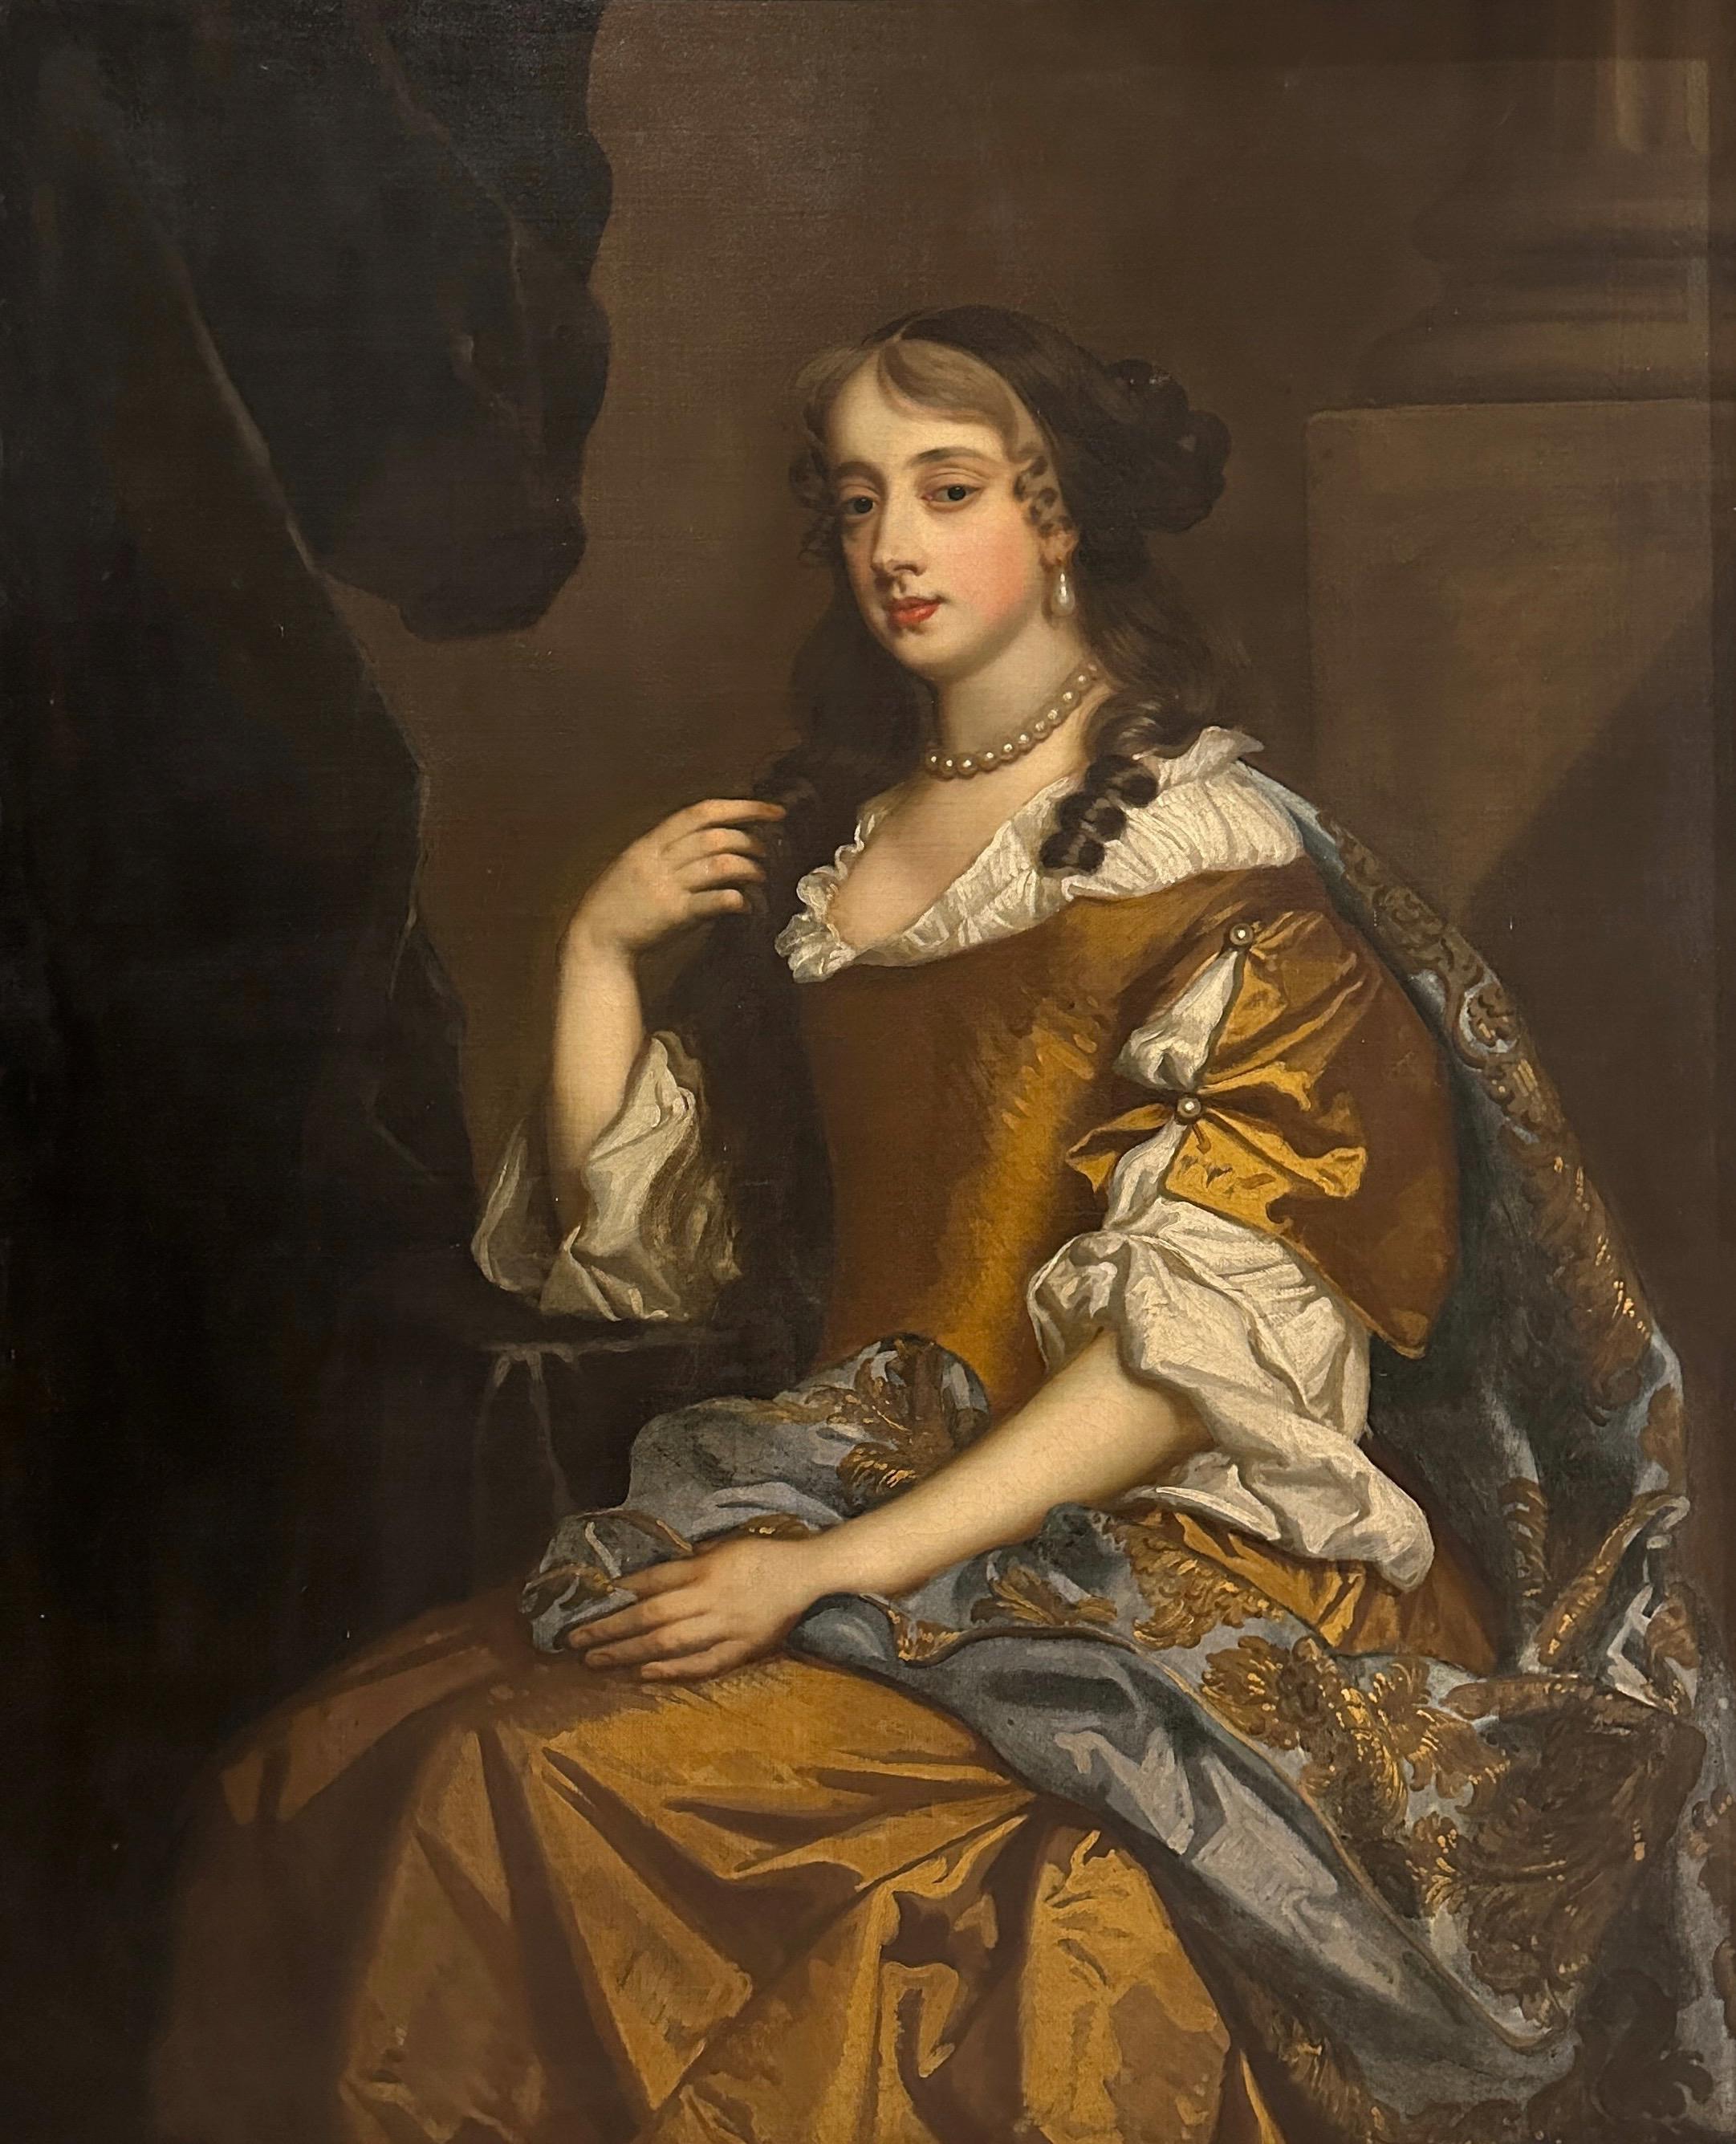 Portrait du 17e siècle d'une dame assise dans un intérieur - Painting de Studio of Peter Lely